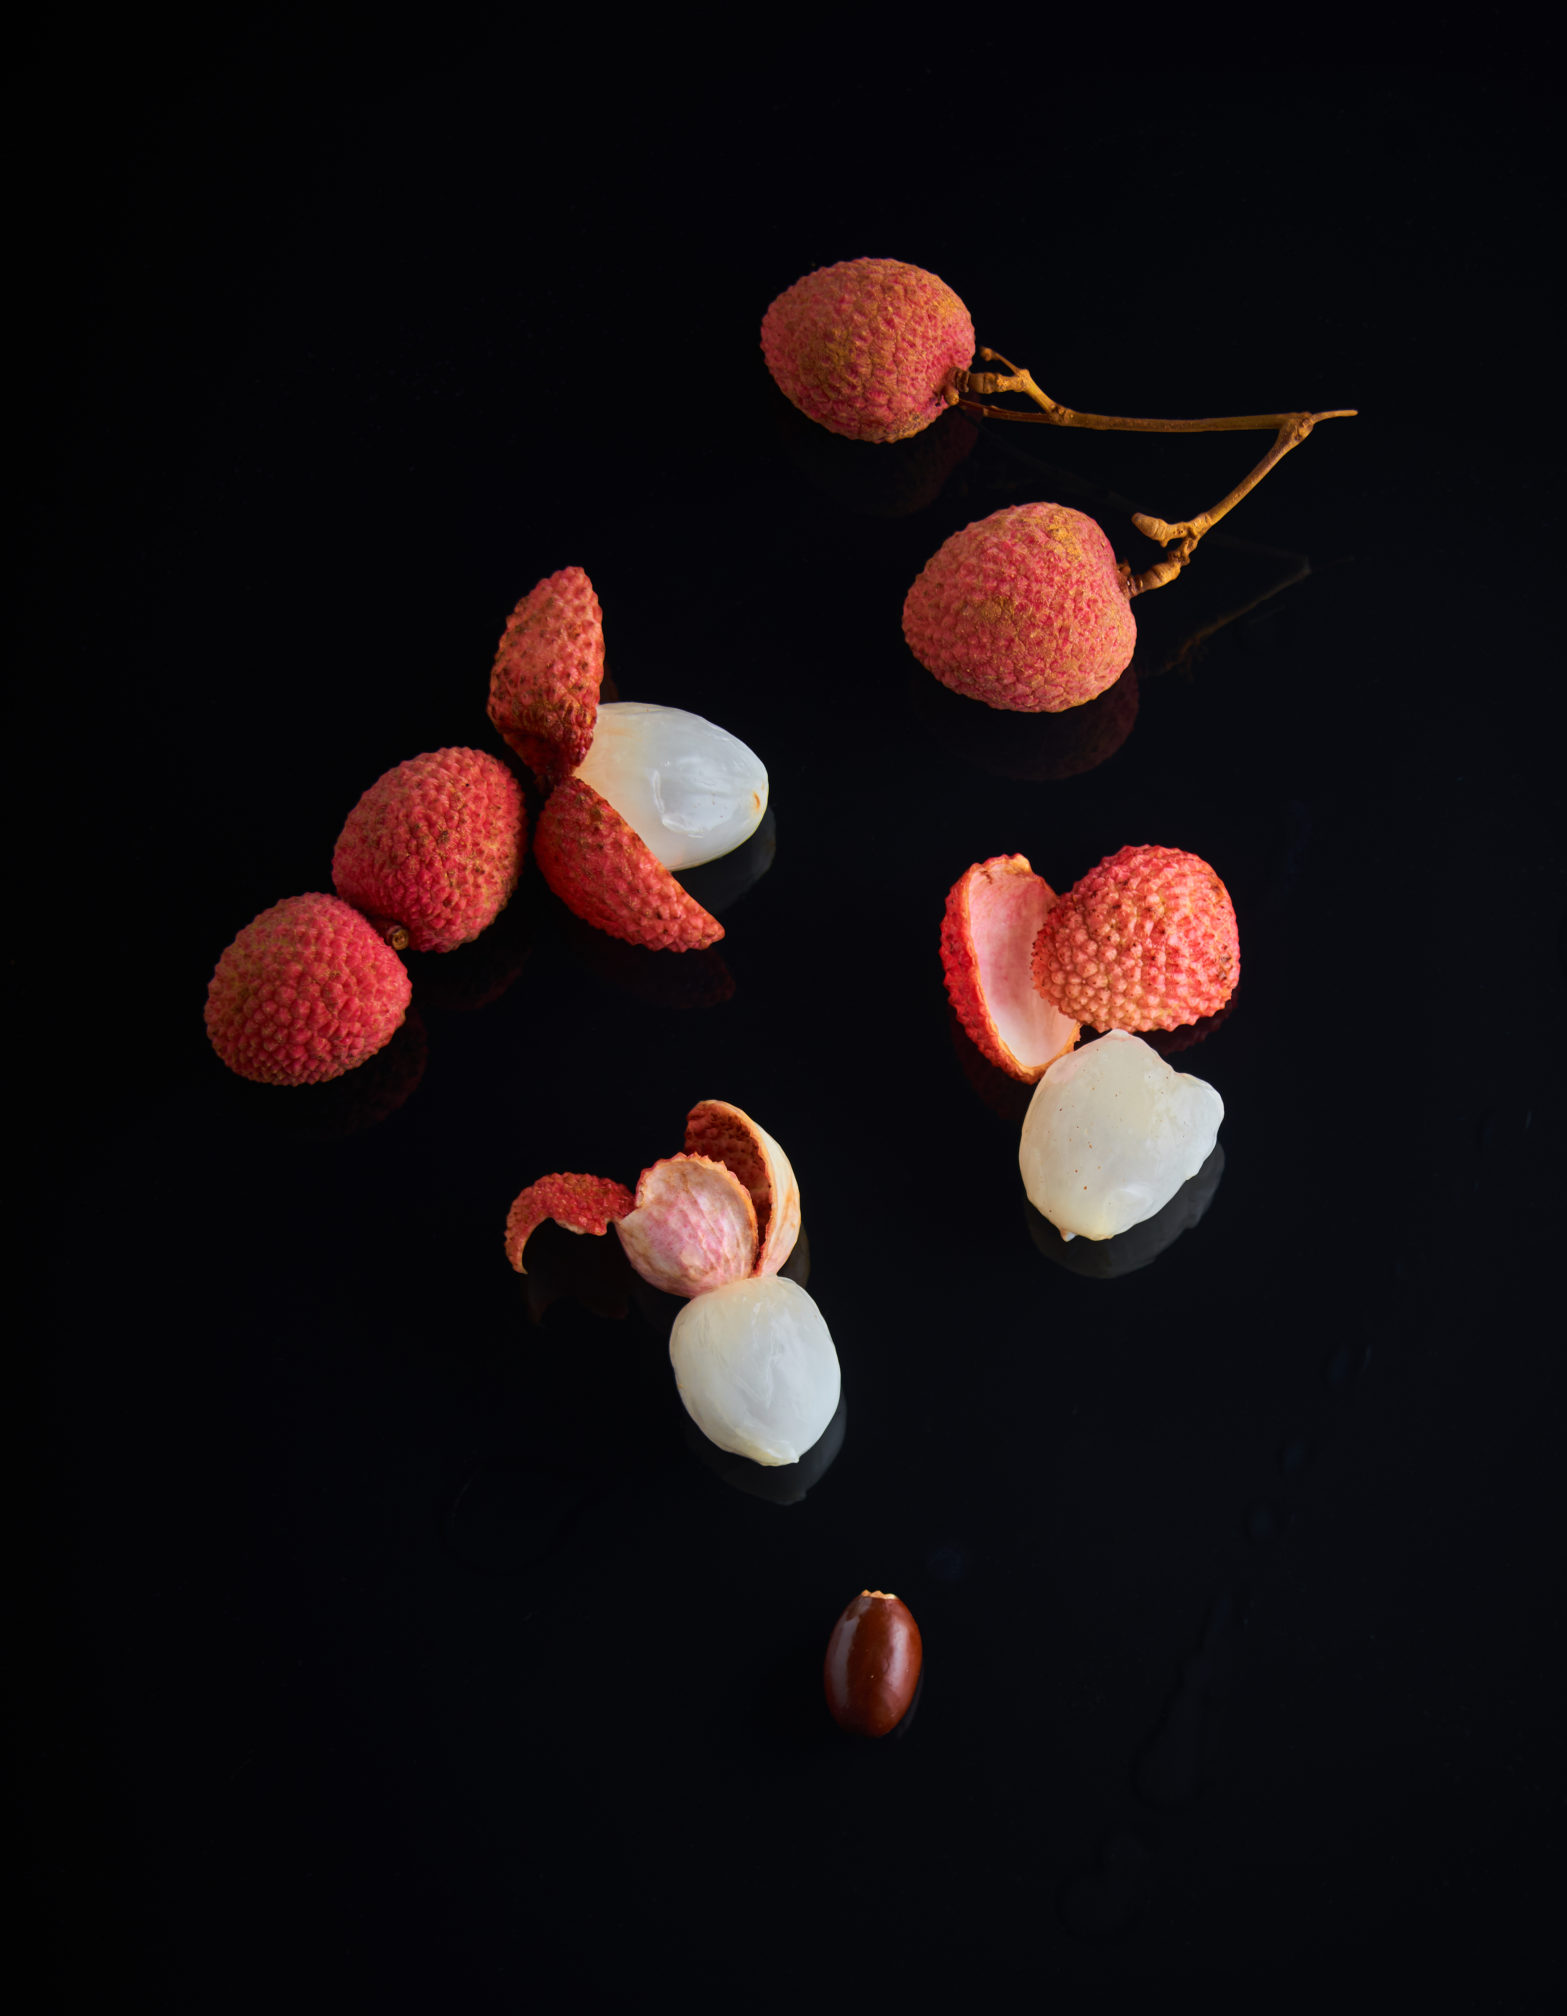 capexo-lilot-fruits-exotique-litchi-réunion-île-maurice-brésil-madagascar-israel-meique